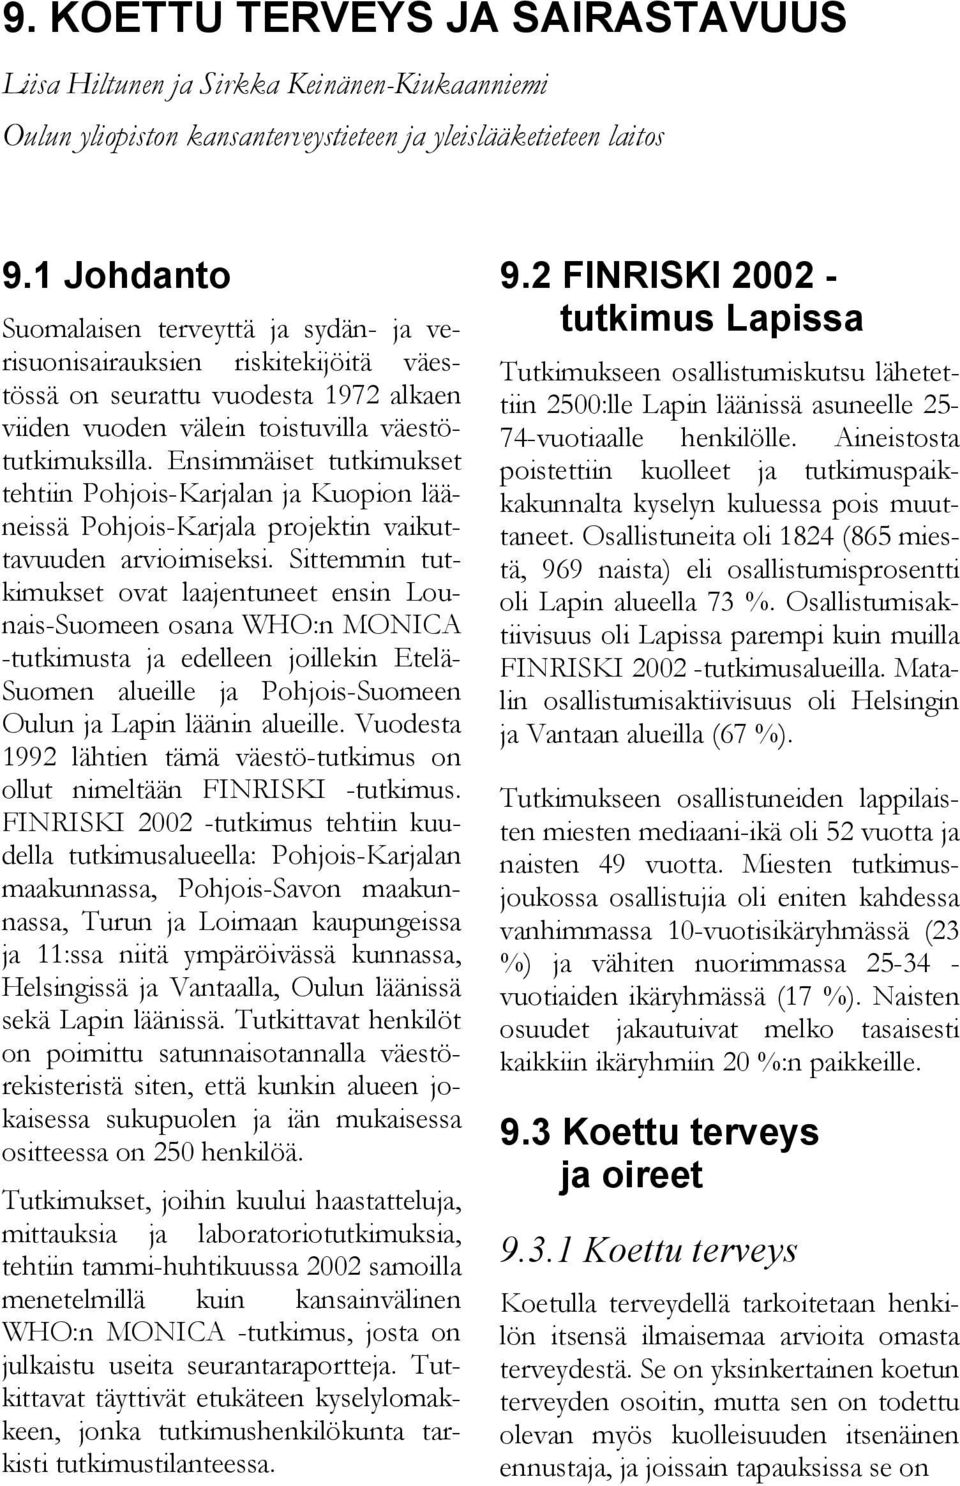 Ensimmäiset tutkimukset tehtiin Pohjois-Karjalan ja Kuopion lääneissä Pohjois-Karjala projektin vaikuttavuuden arvioimiseksi.